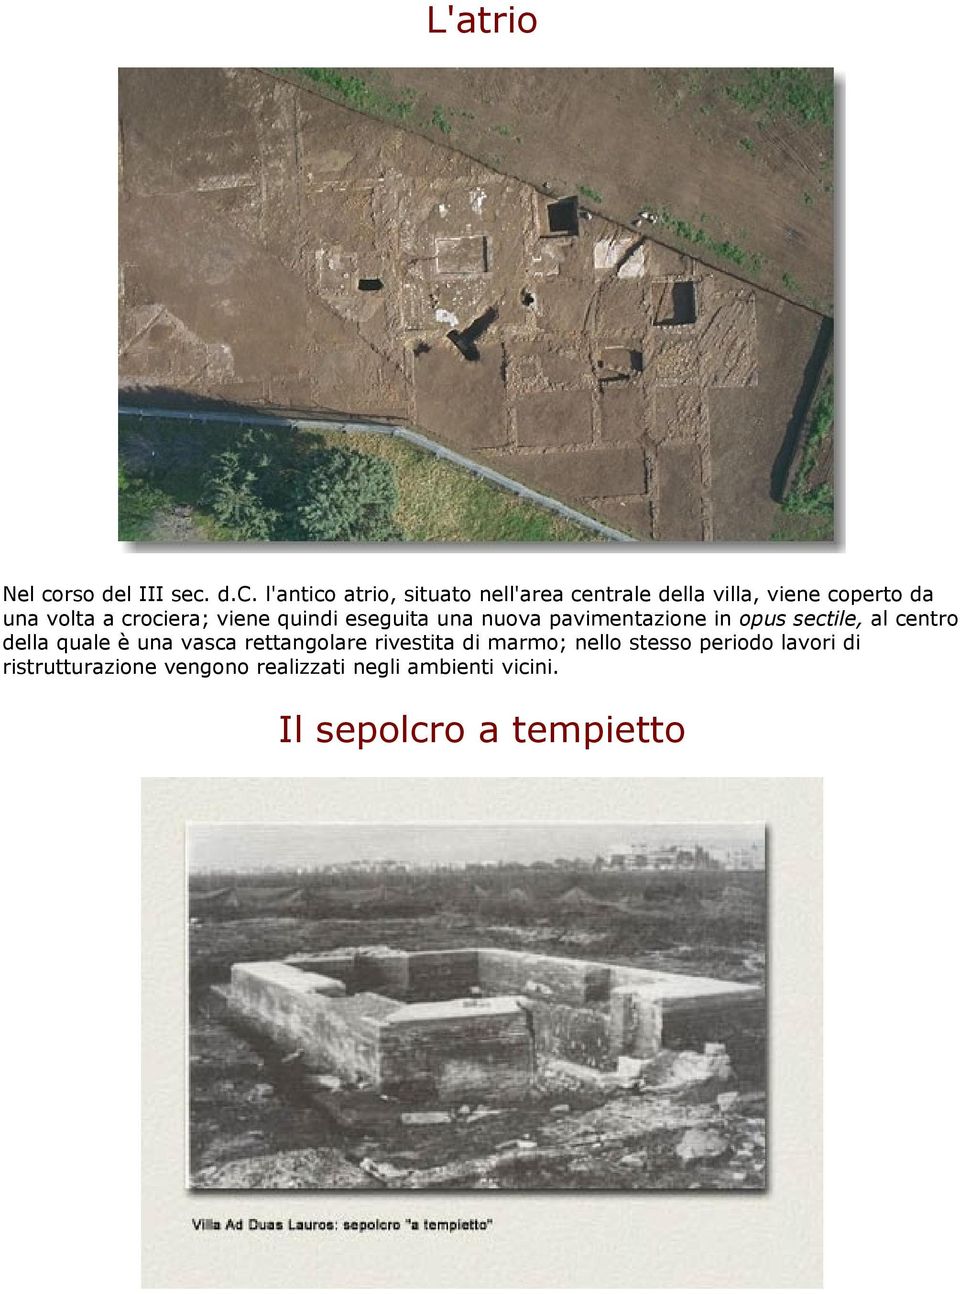 d.c. l'antico atrio, situato nell'area centrale della villa, viene coperto da una volta a